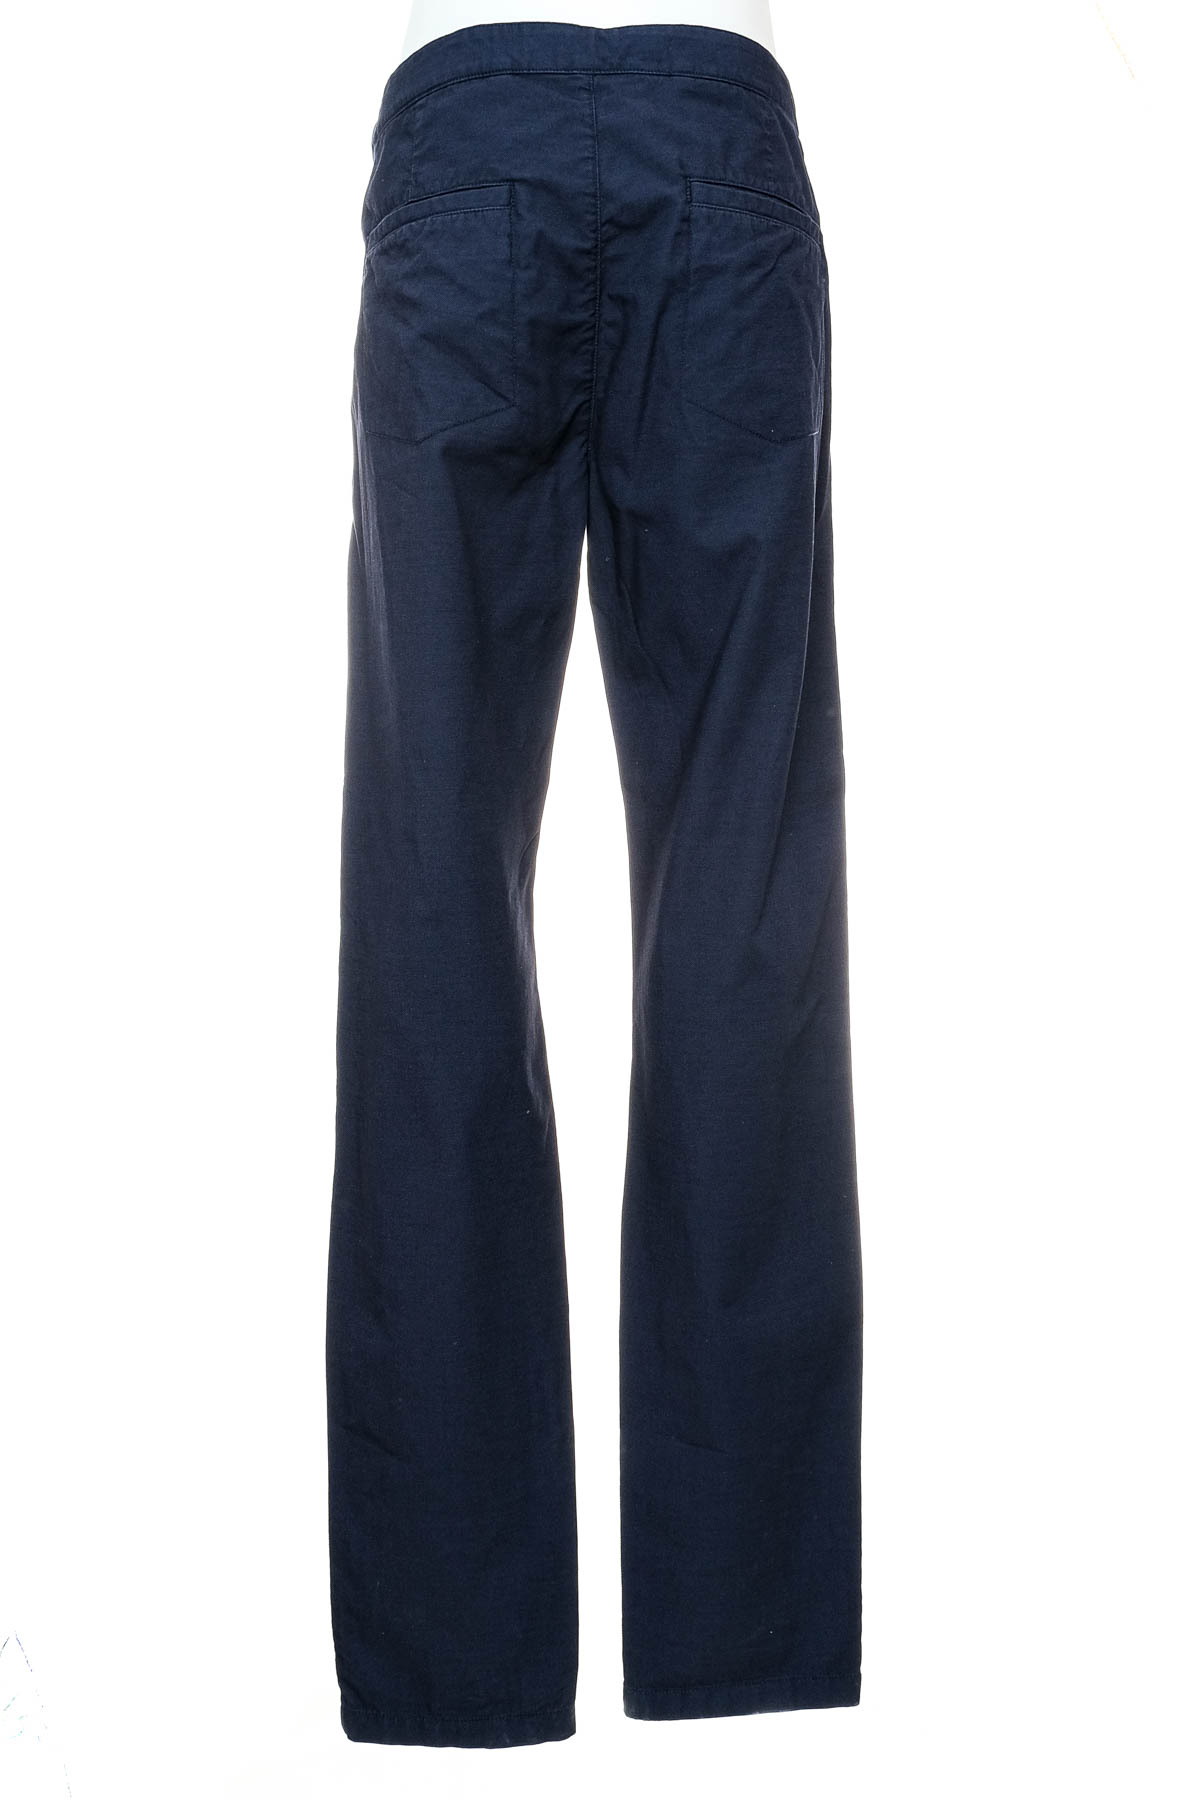 Pantalon pentru bărbați - Marina Militare - 1